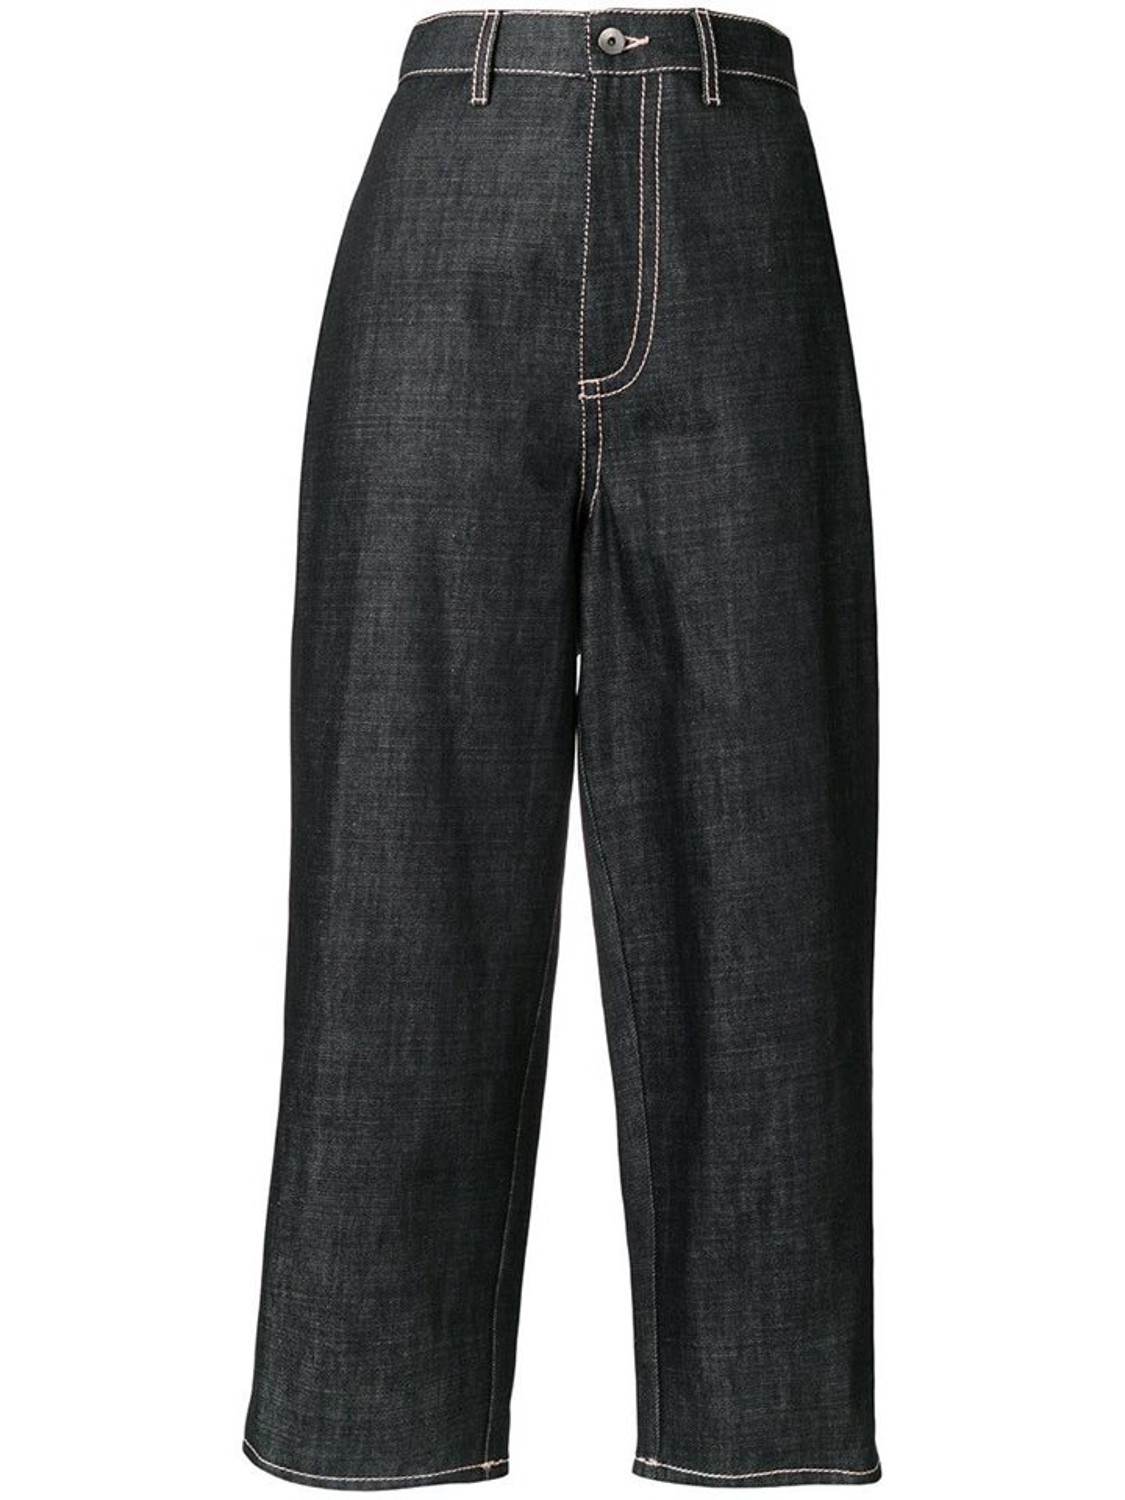 shop Marni  Pantaloni: Pantaloni Marni, jeans, blu indigo, vita alta, tasche davanti e dietro, modello ampio, impunture a contrasto.

Composizione: 100% cotone. number 1297